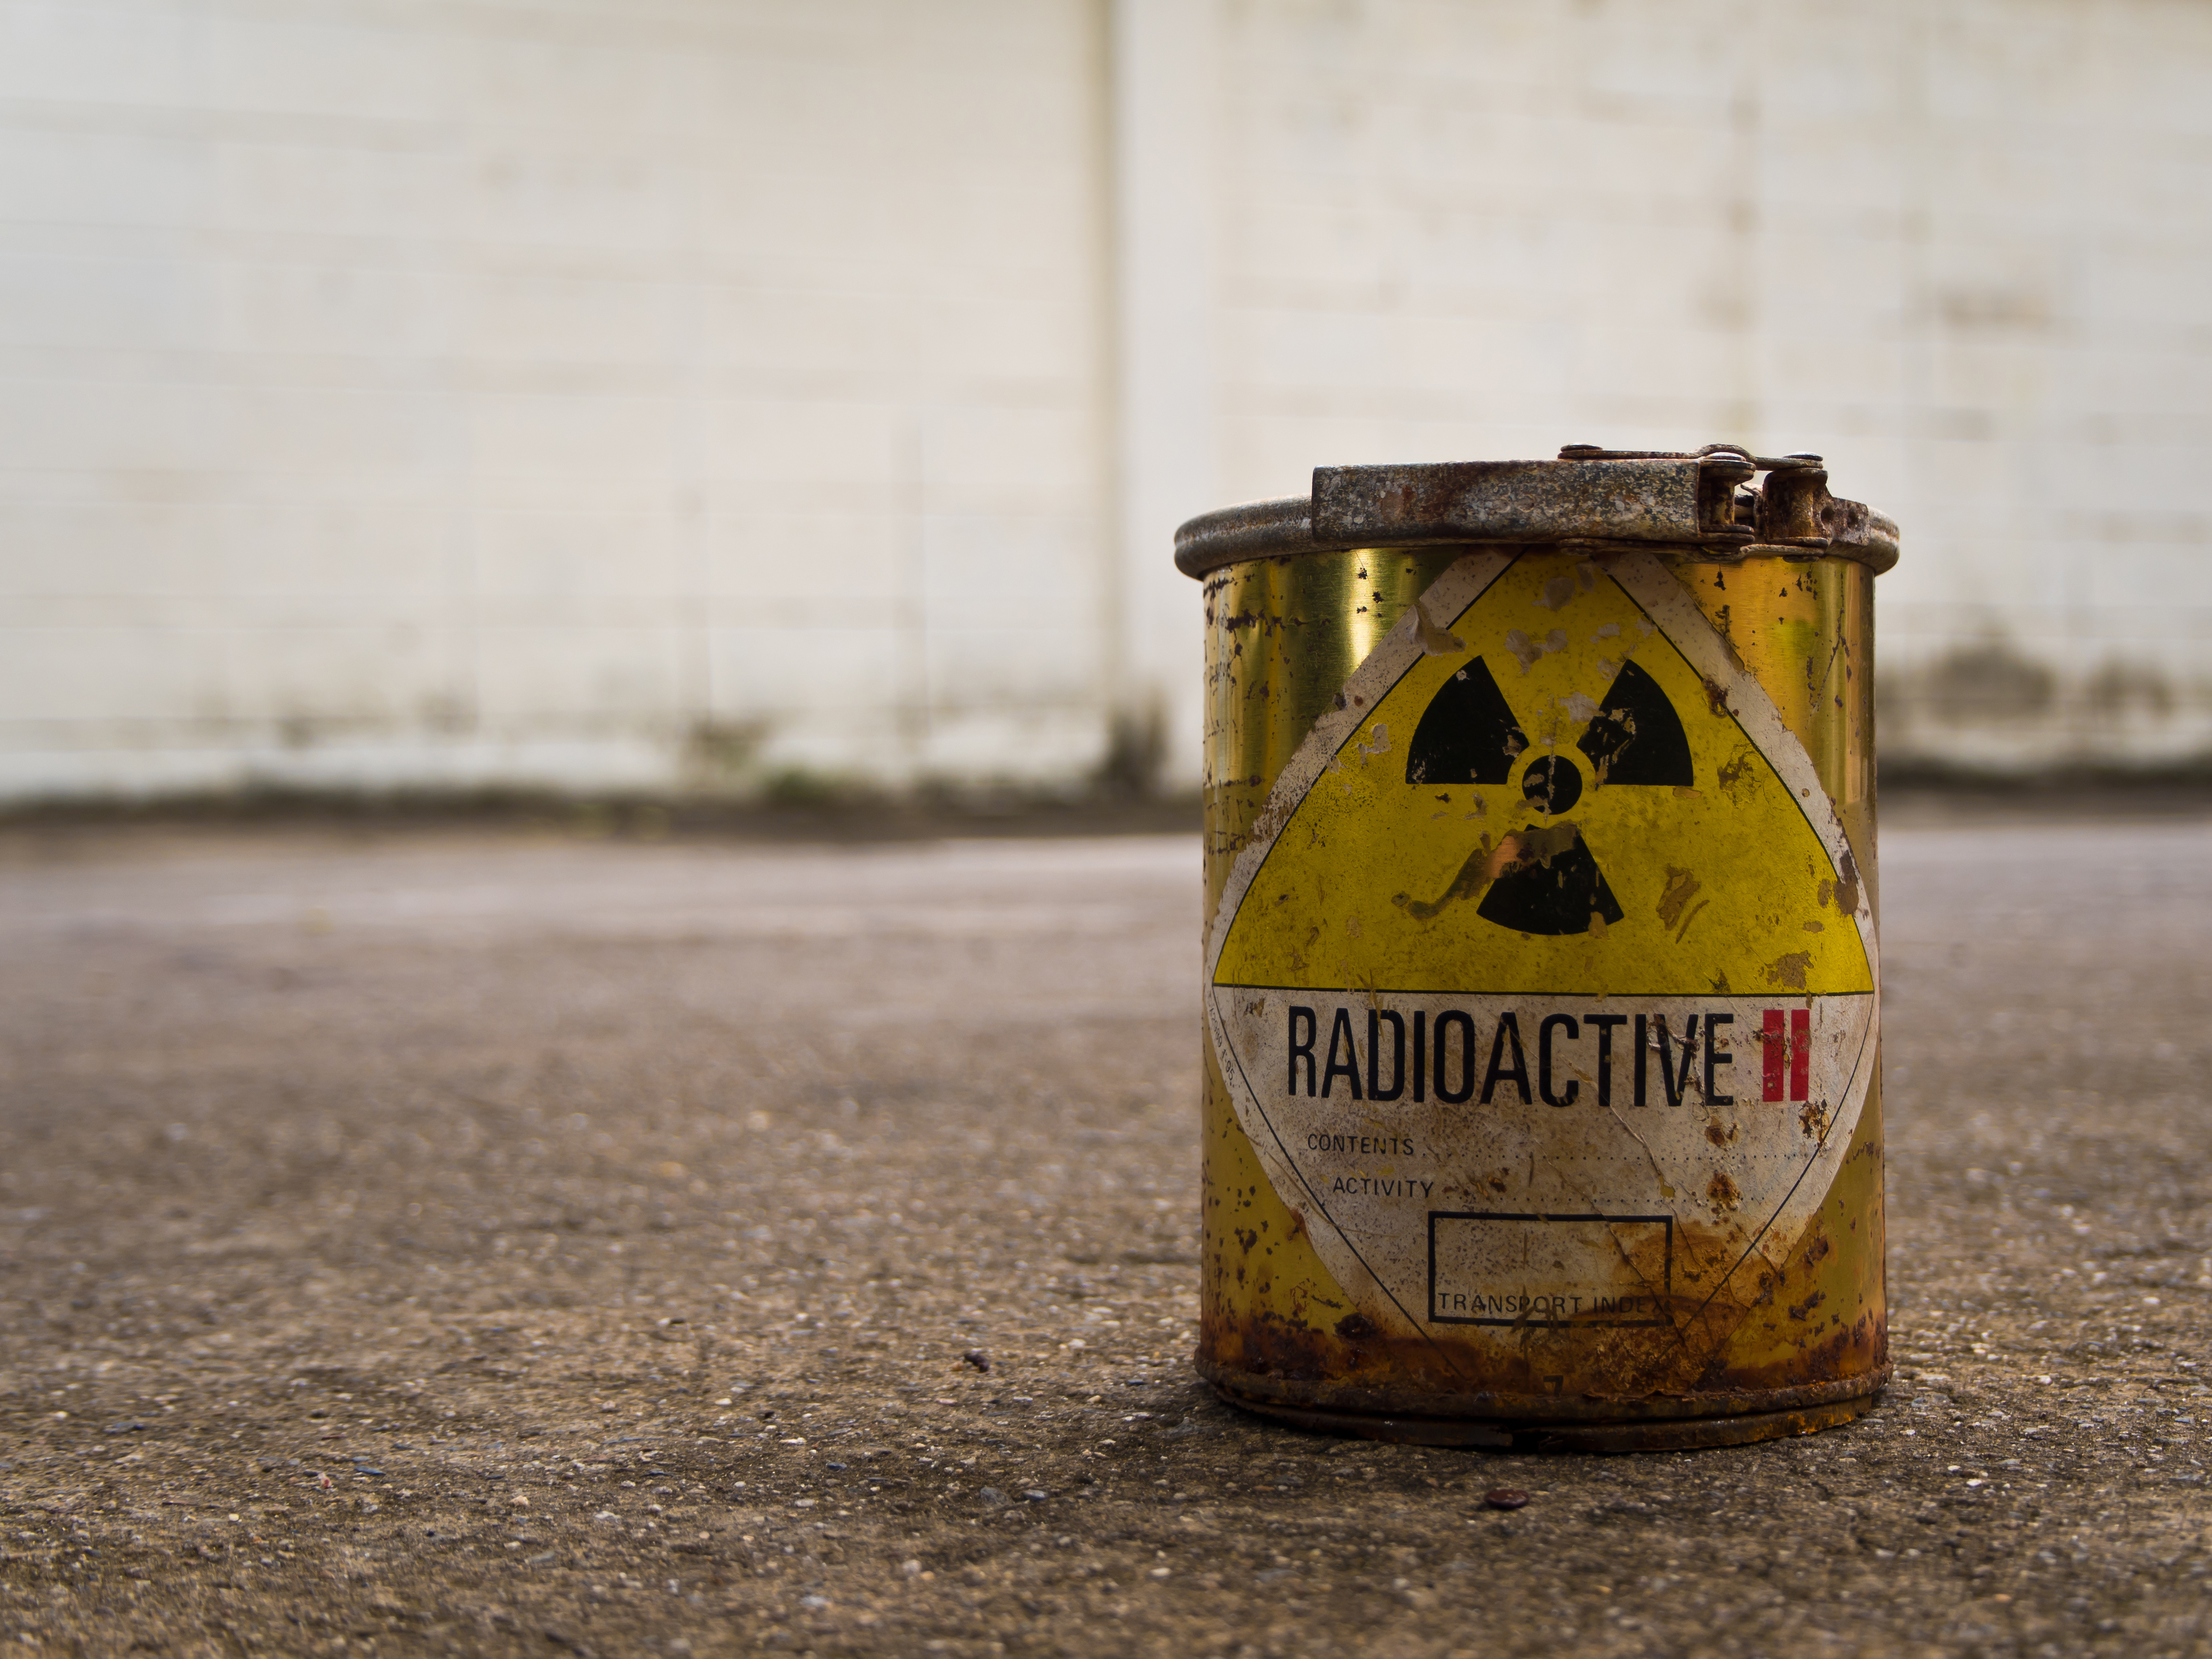 Un bărbat din Germania a găsit material radioactiv în garajul său în timp ce făcea curăţenie